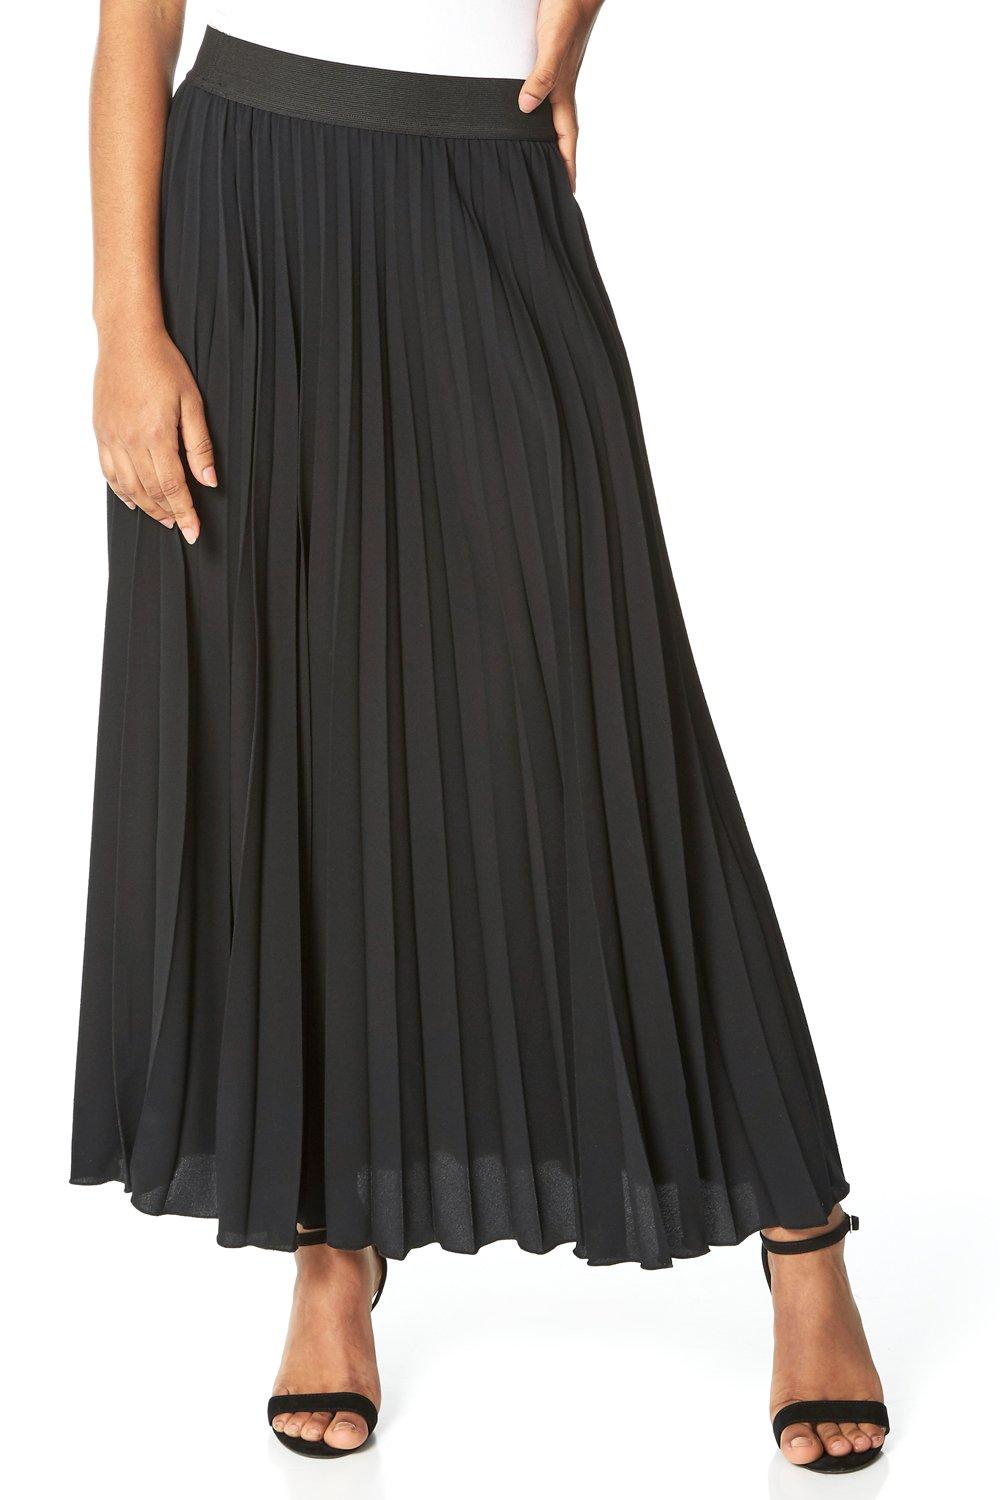 Плиссированная юбка-макси Roman, черный юбка женская плиссированная тюлевая макси юбка джокер с эластичной завышенной талией сетчатая макси юбка пачка на лето